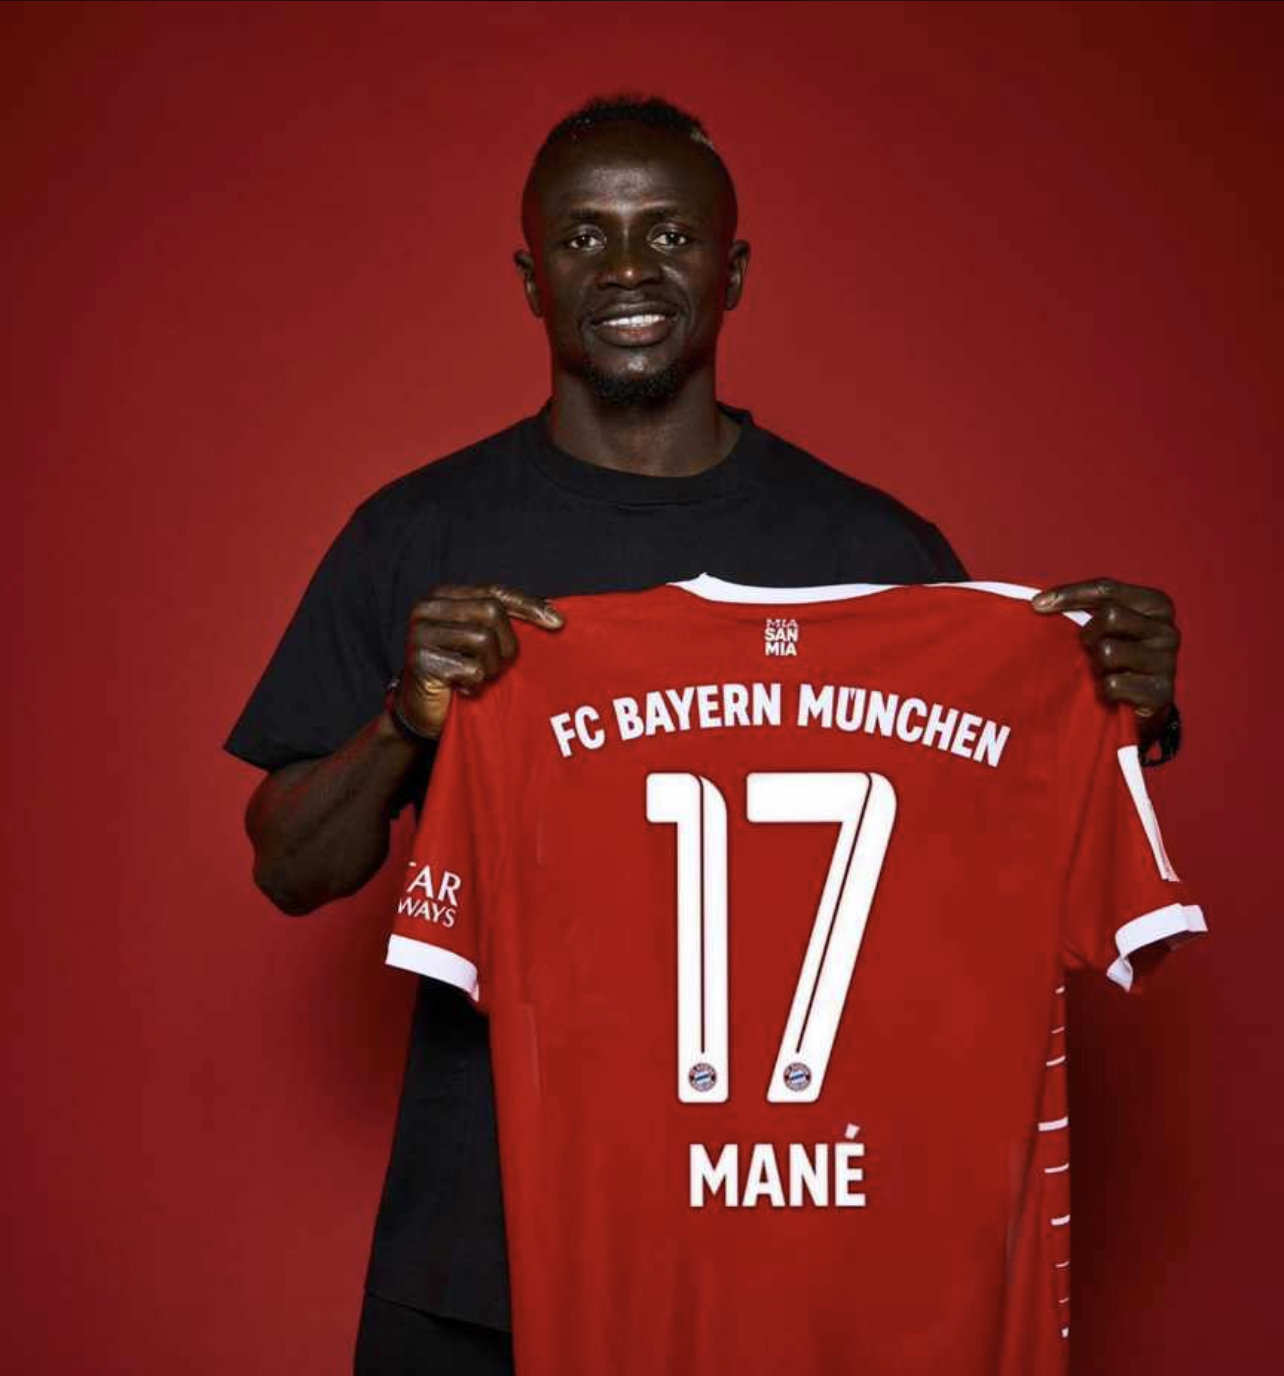 Numéro 17 au Bayern, les raisons du choix de Sadio Mané révélées